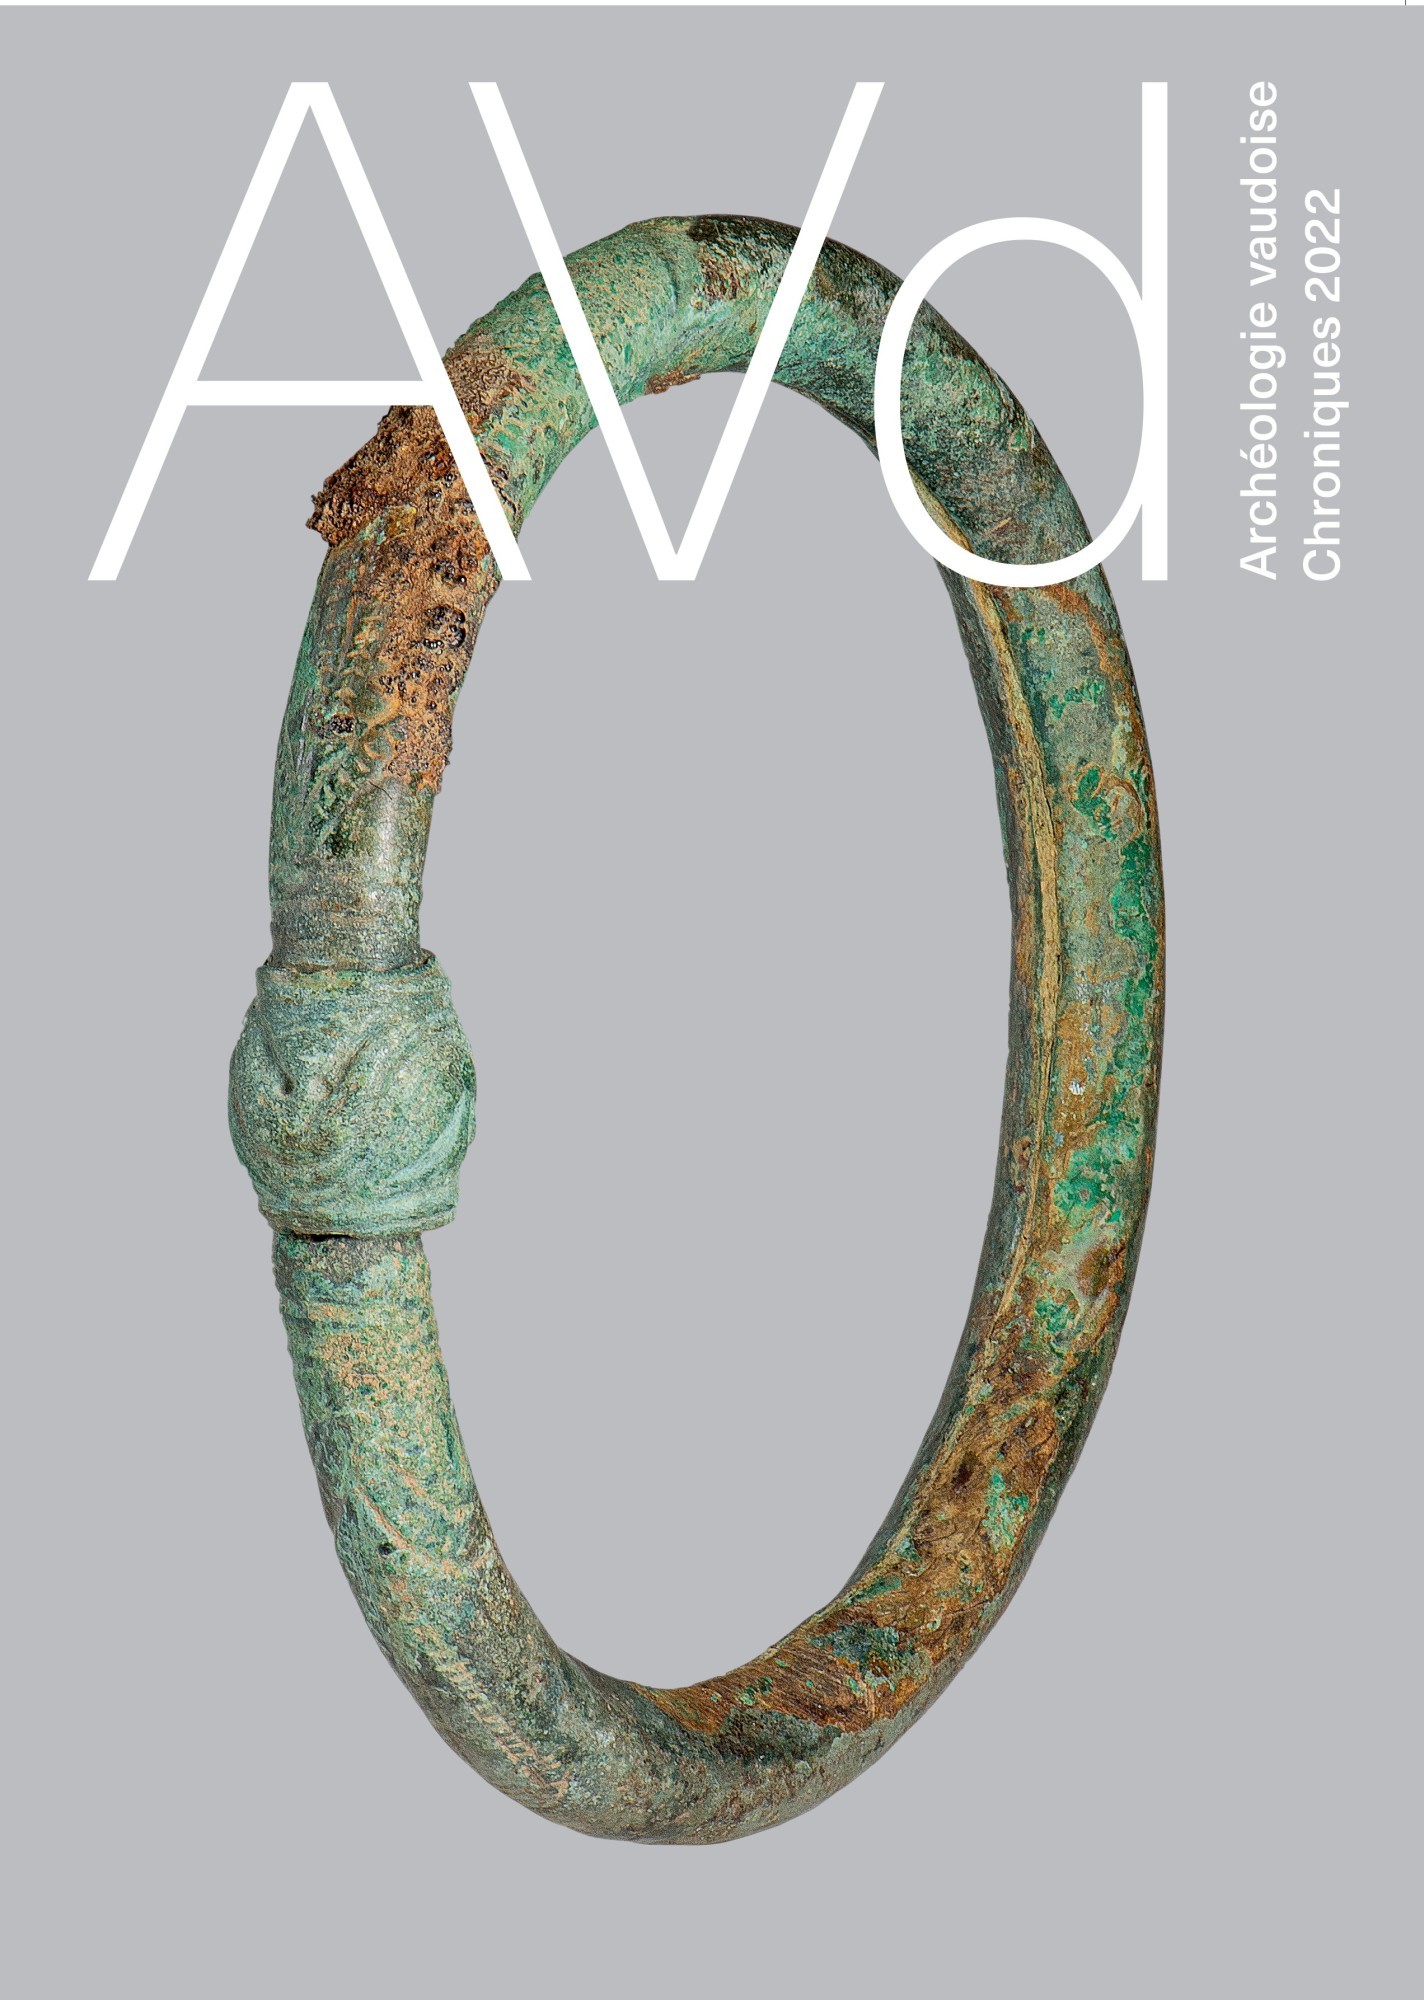 La couverture de la dernière édition de l'Architecture vaudoise représente un bracelet en bronze issu de la nécropole laténienne de Denges-Les Delésulles.